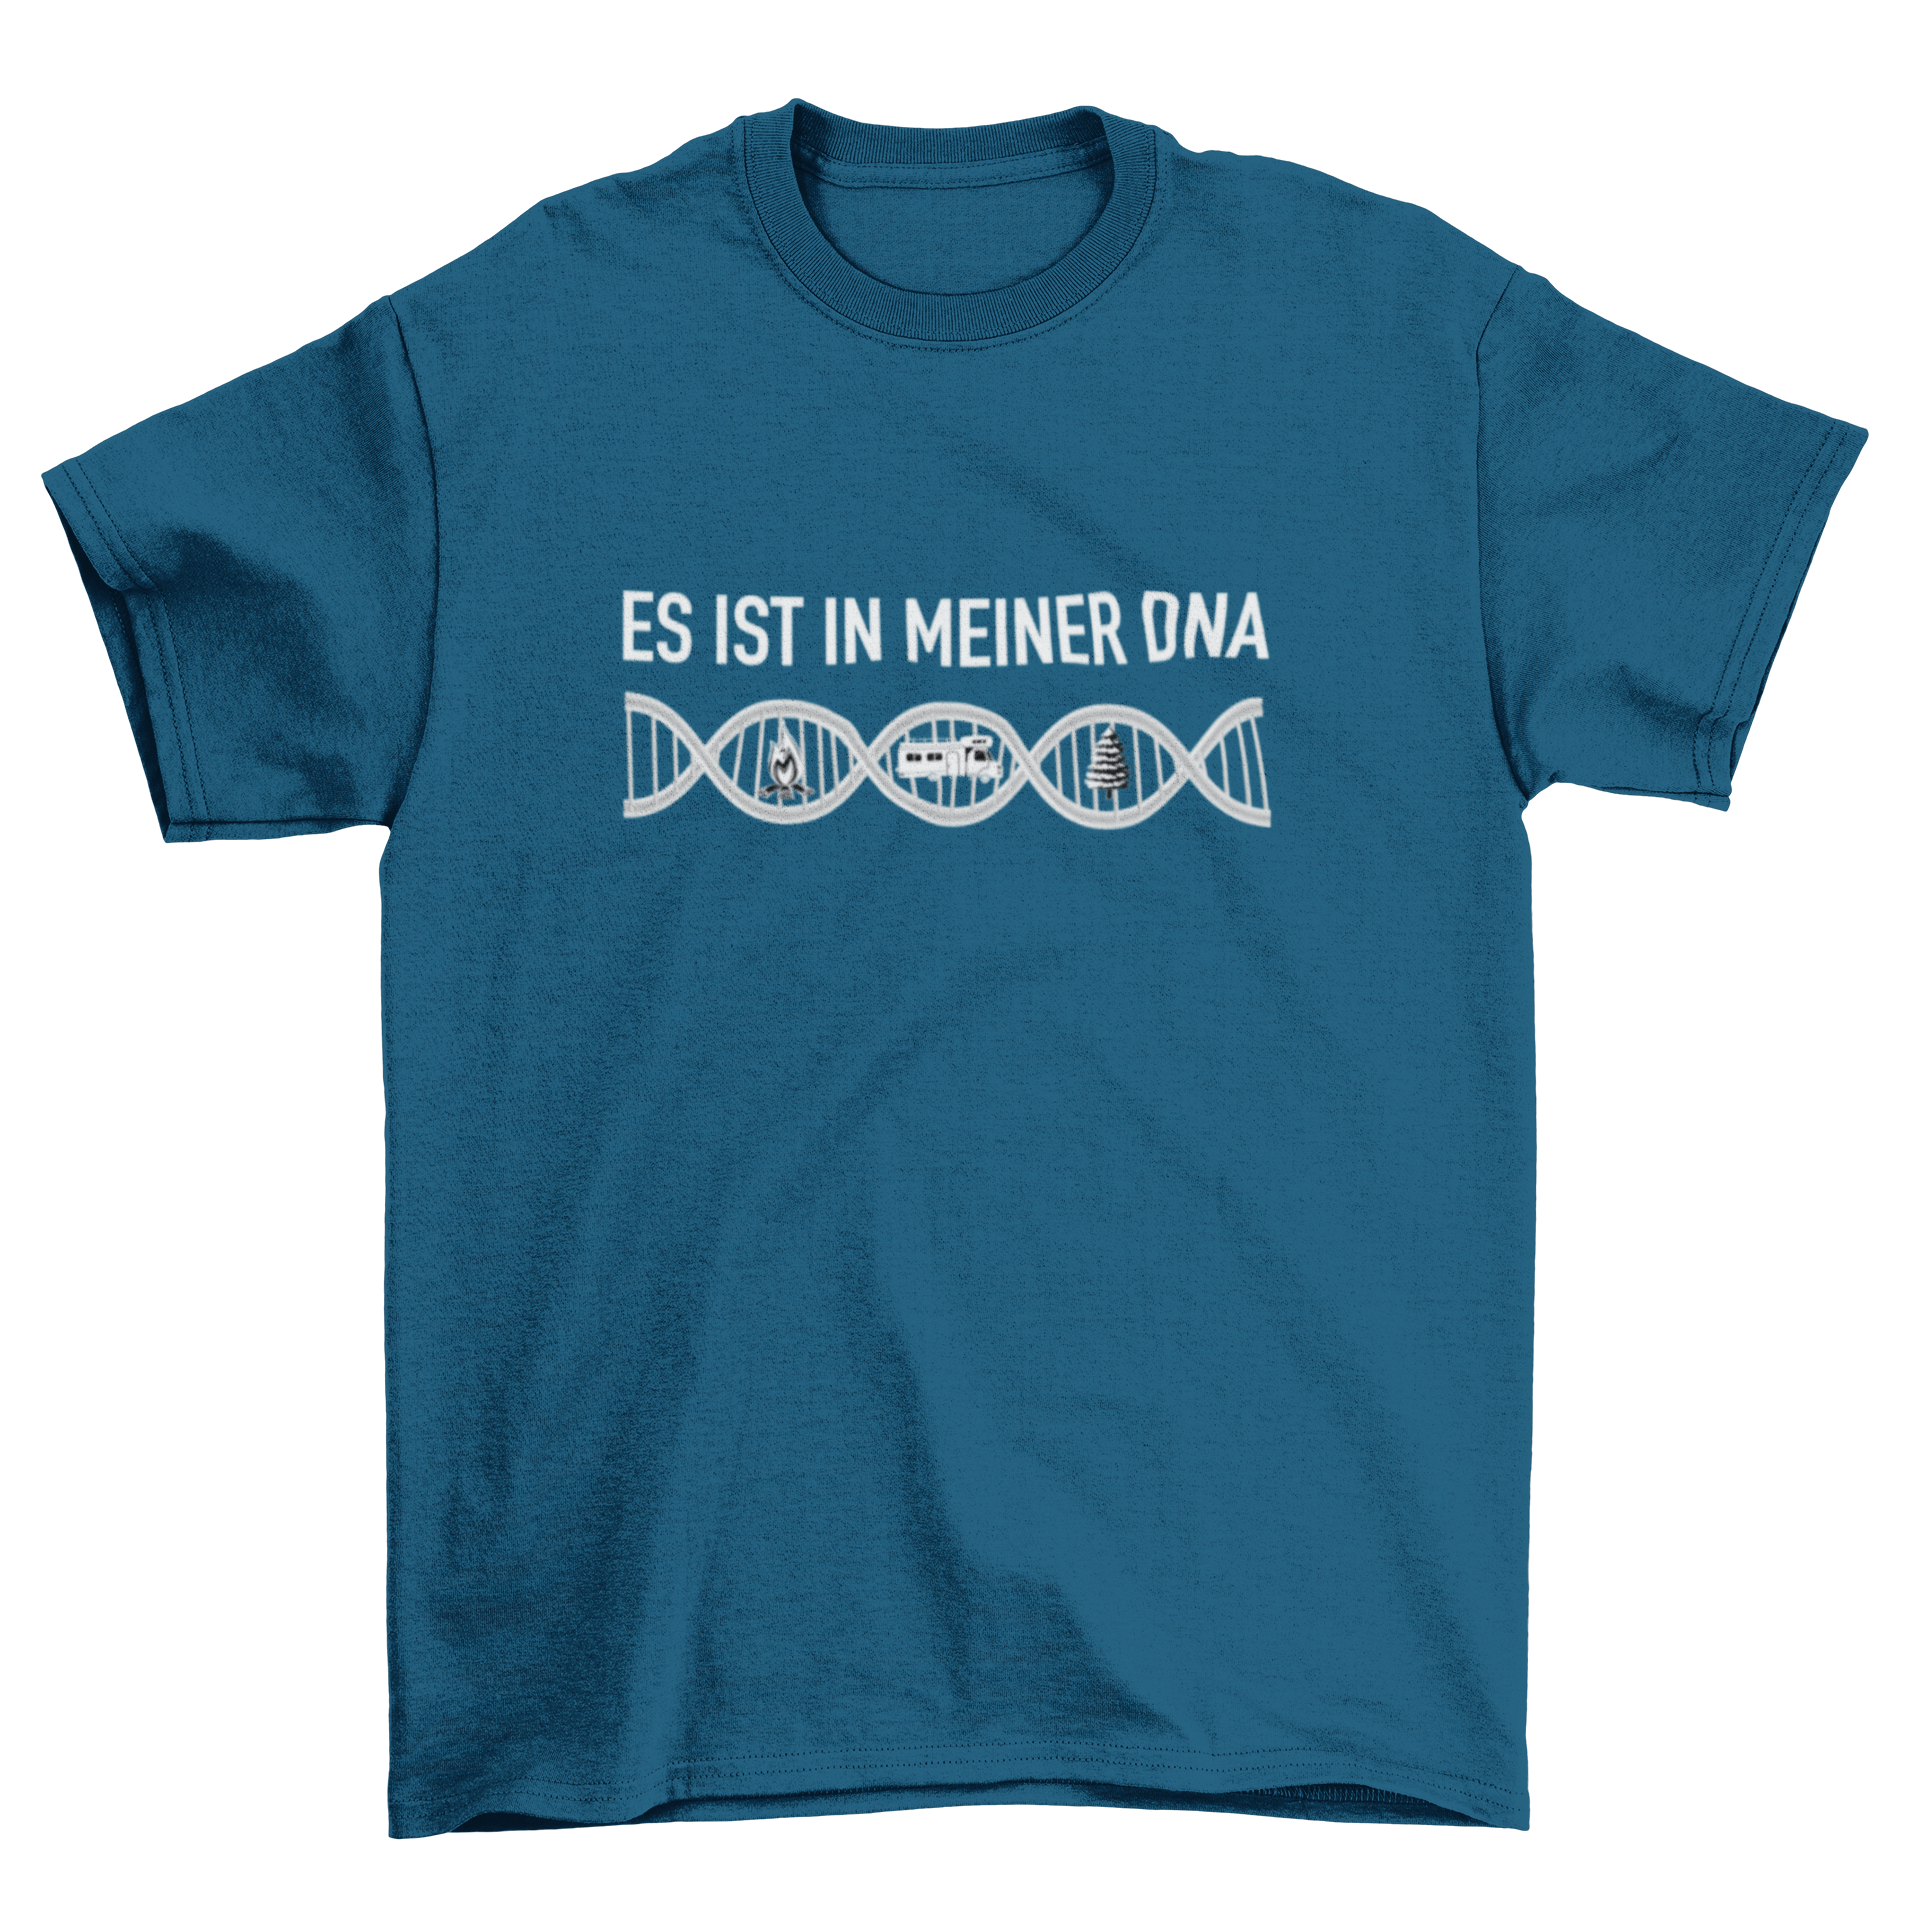 Es ist in meiner DNA T-Shirt